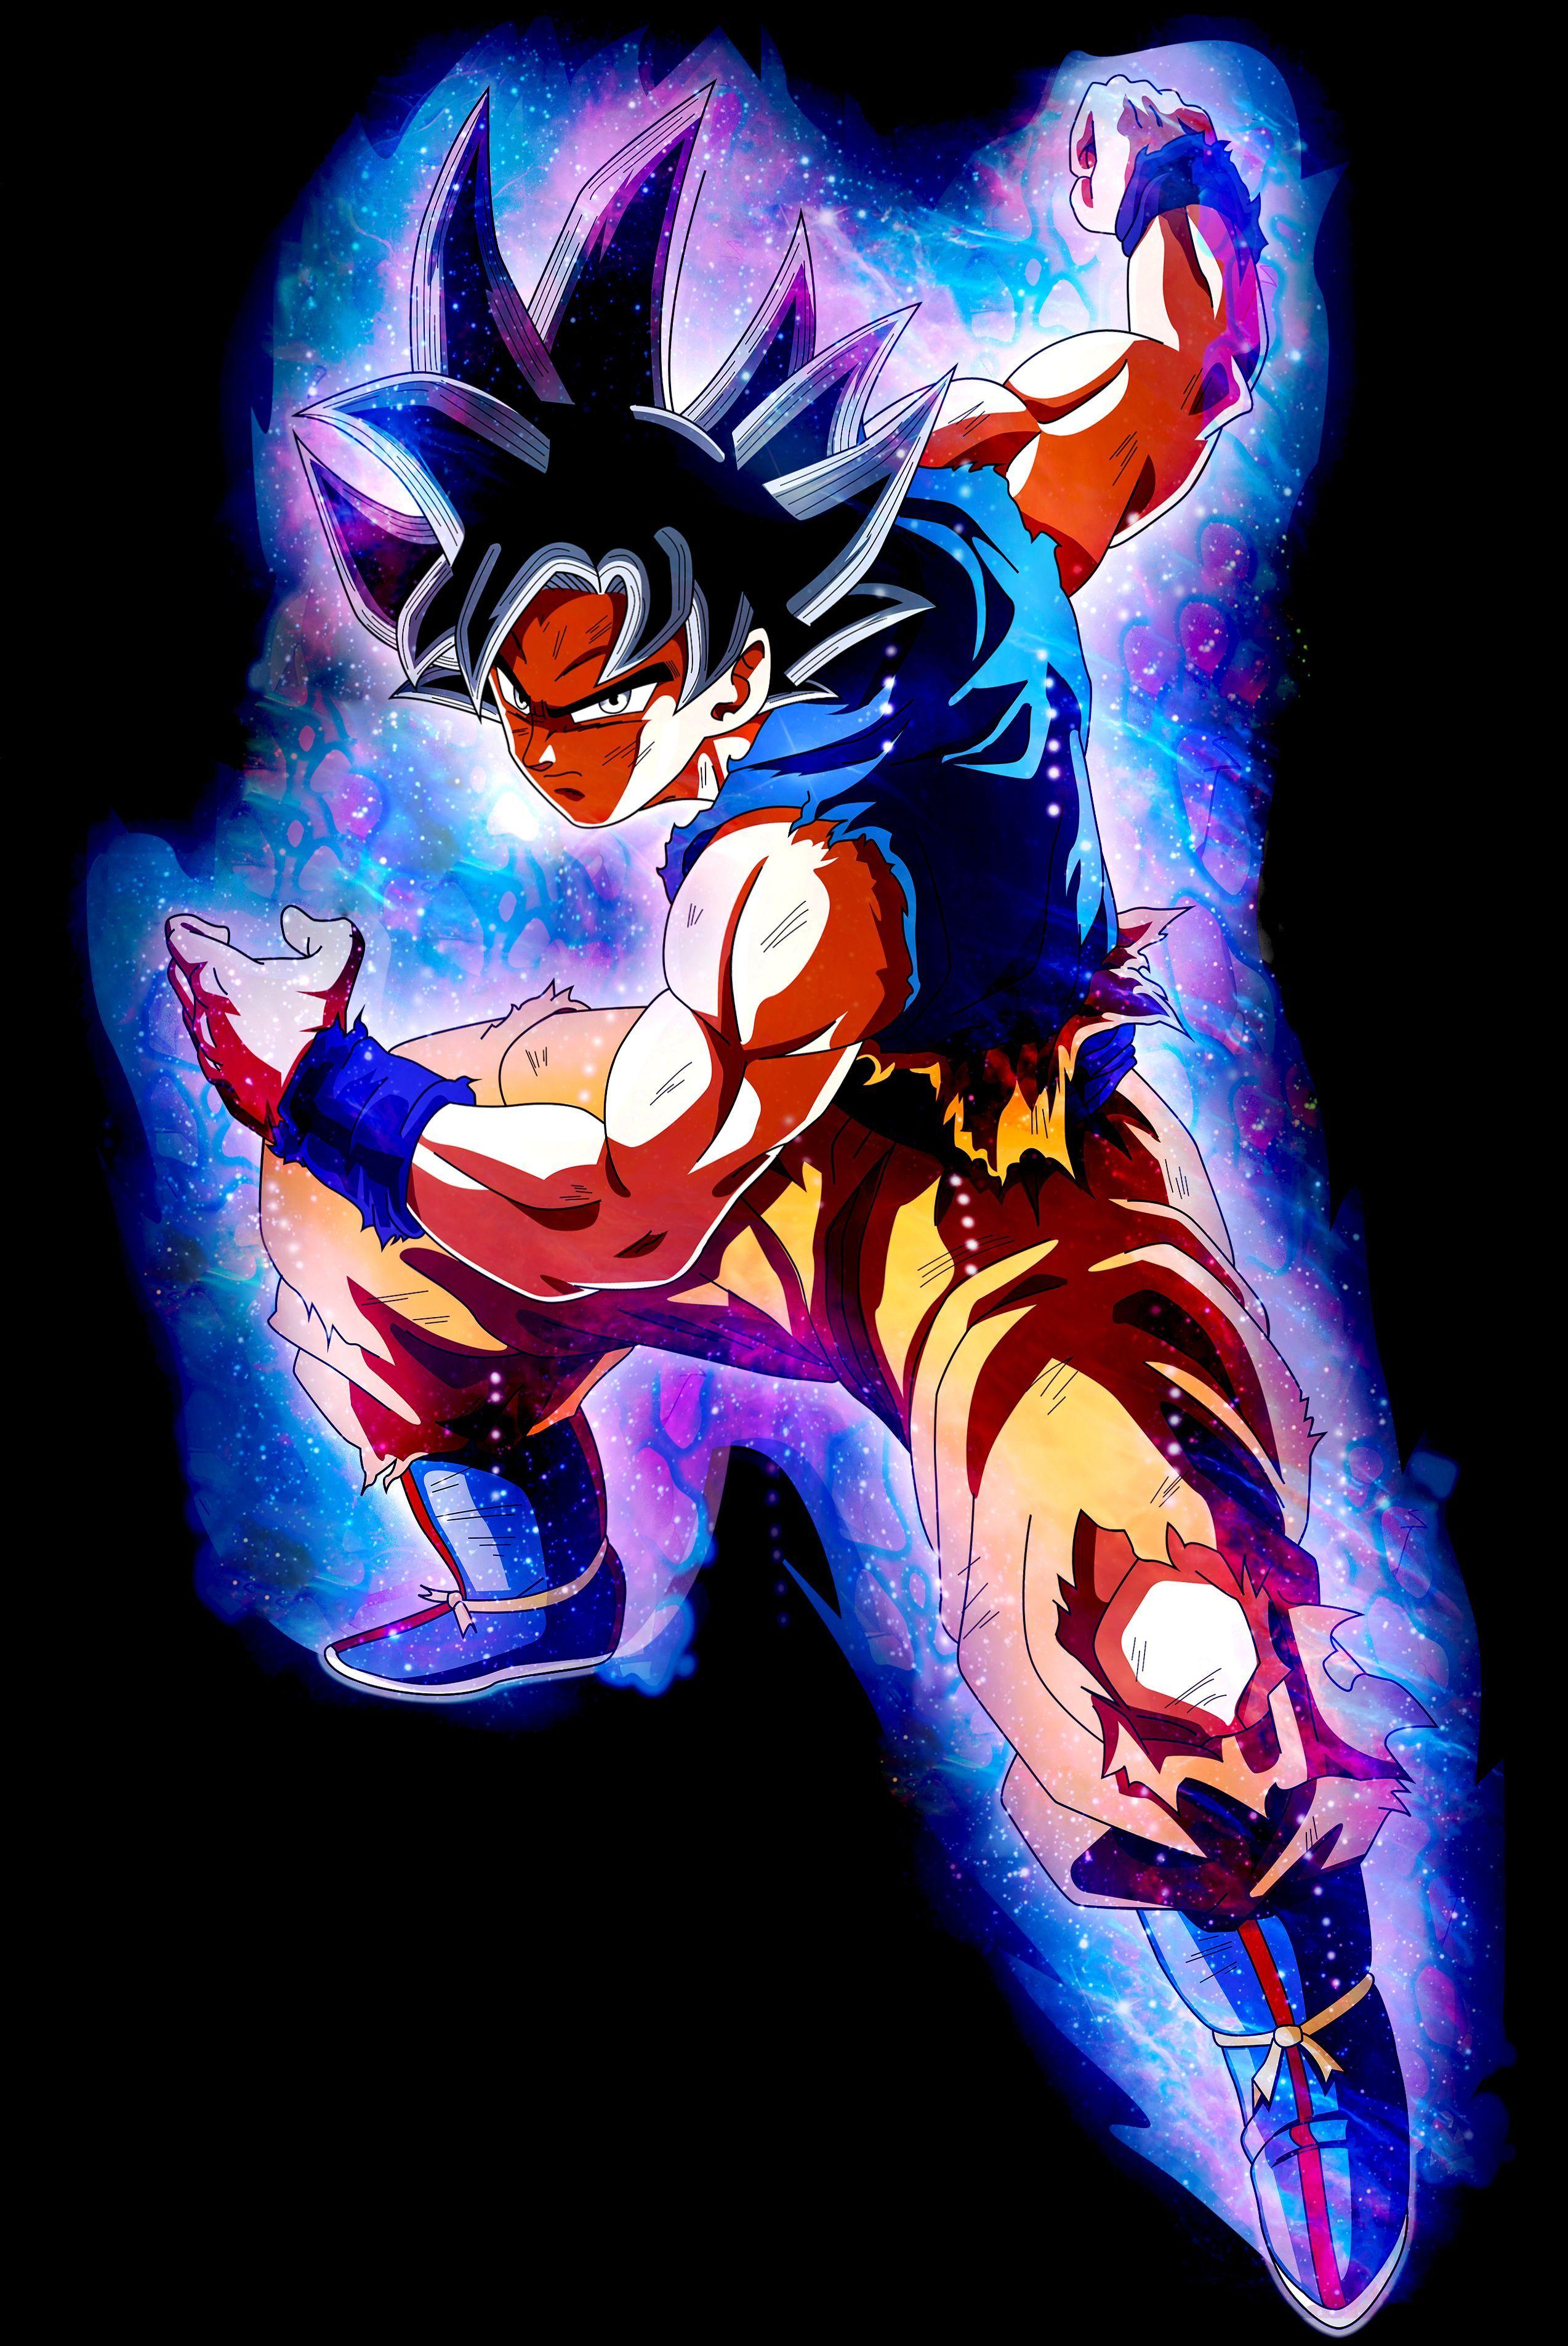 Goku Instinct no Gokui by XYelkiltroX. Anime dragon ball super, Dragon ball artwork, Dragon ball art